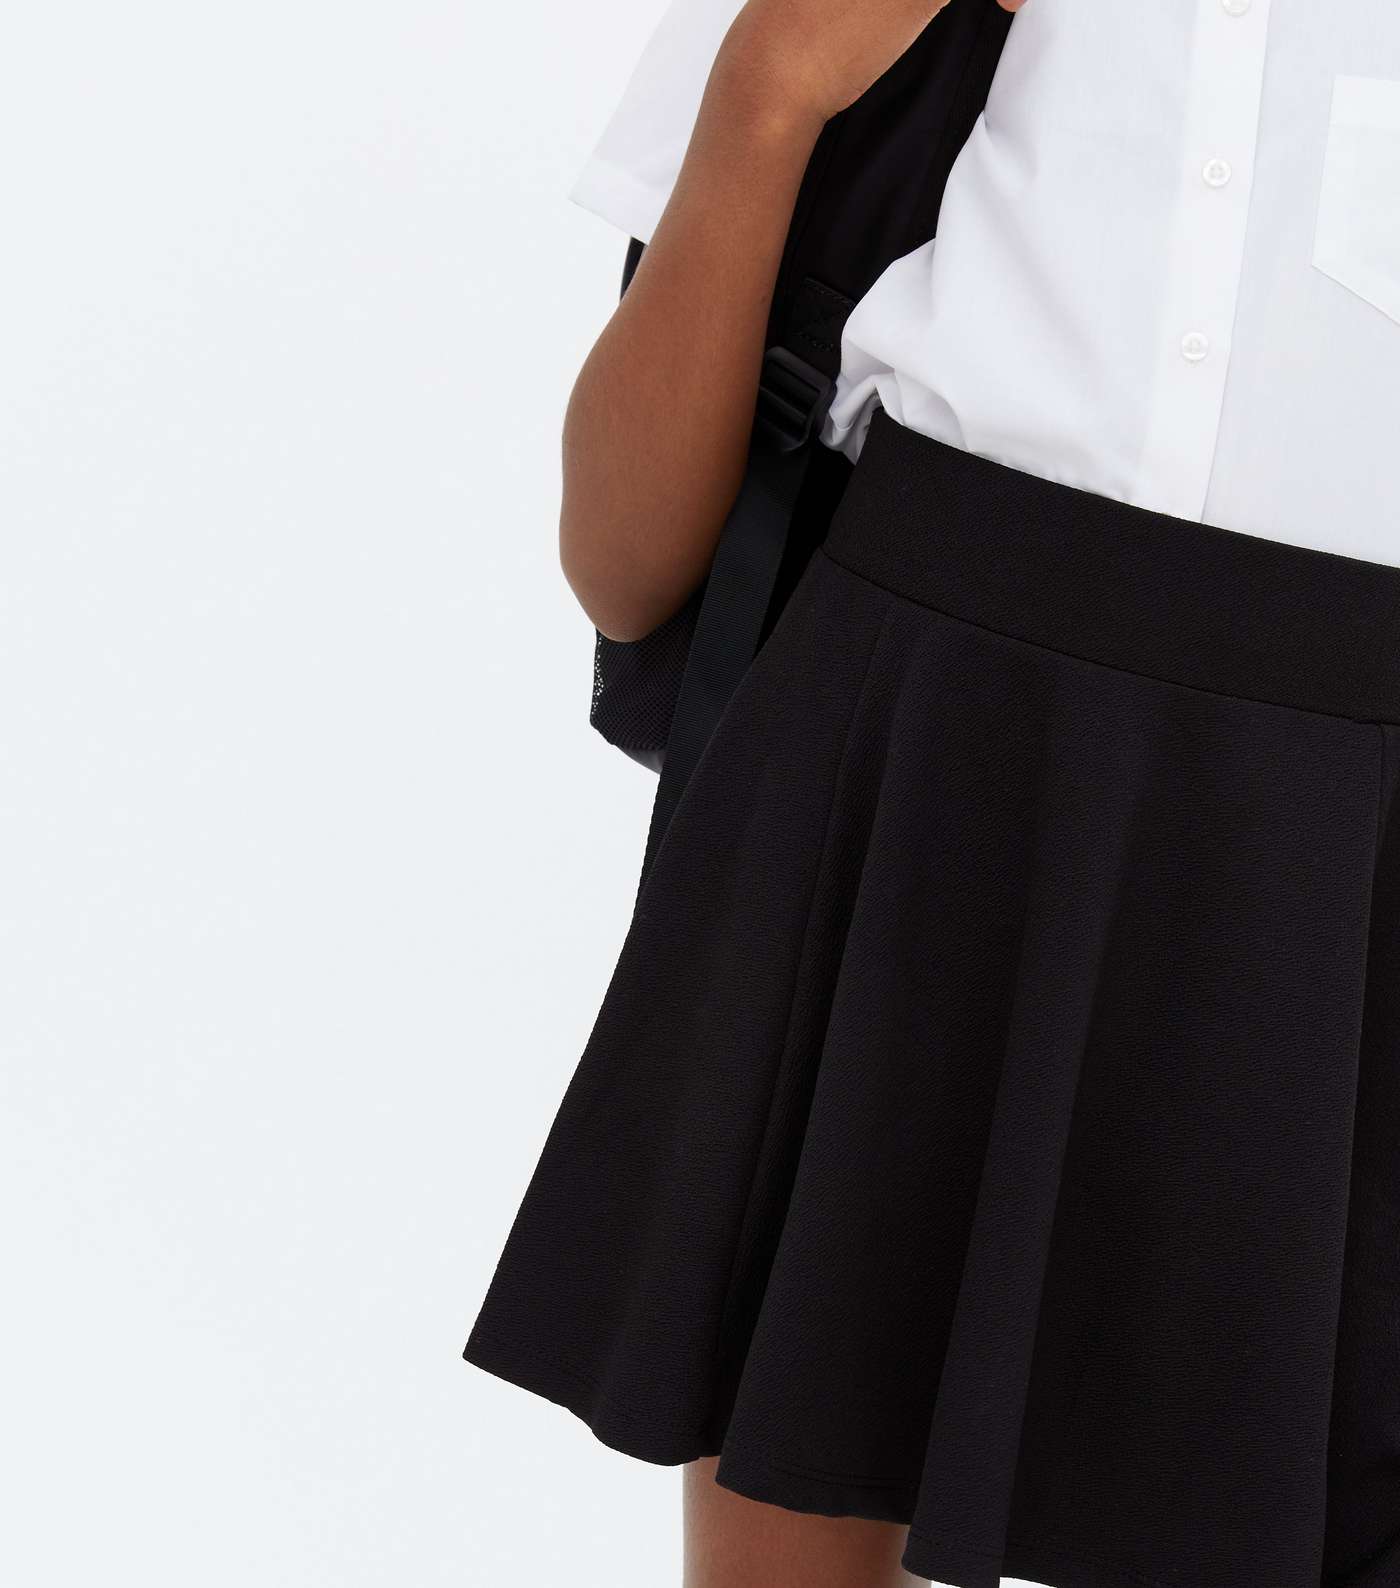 Girls 2 Pack Black Pleated Skater Skirts Image 3